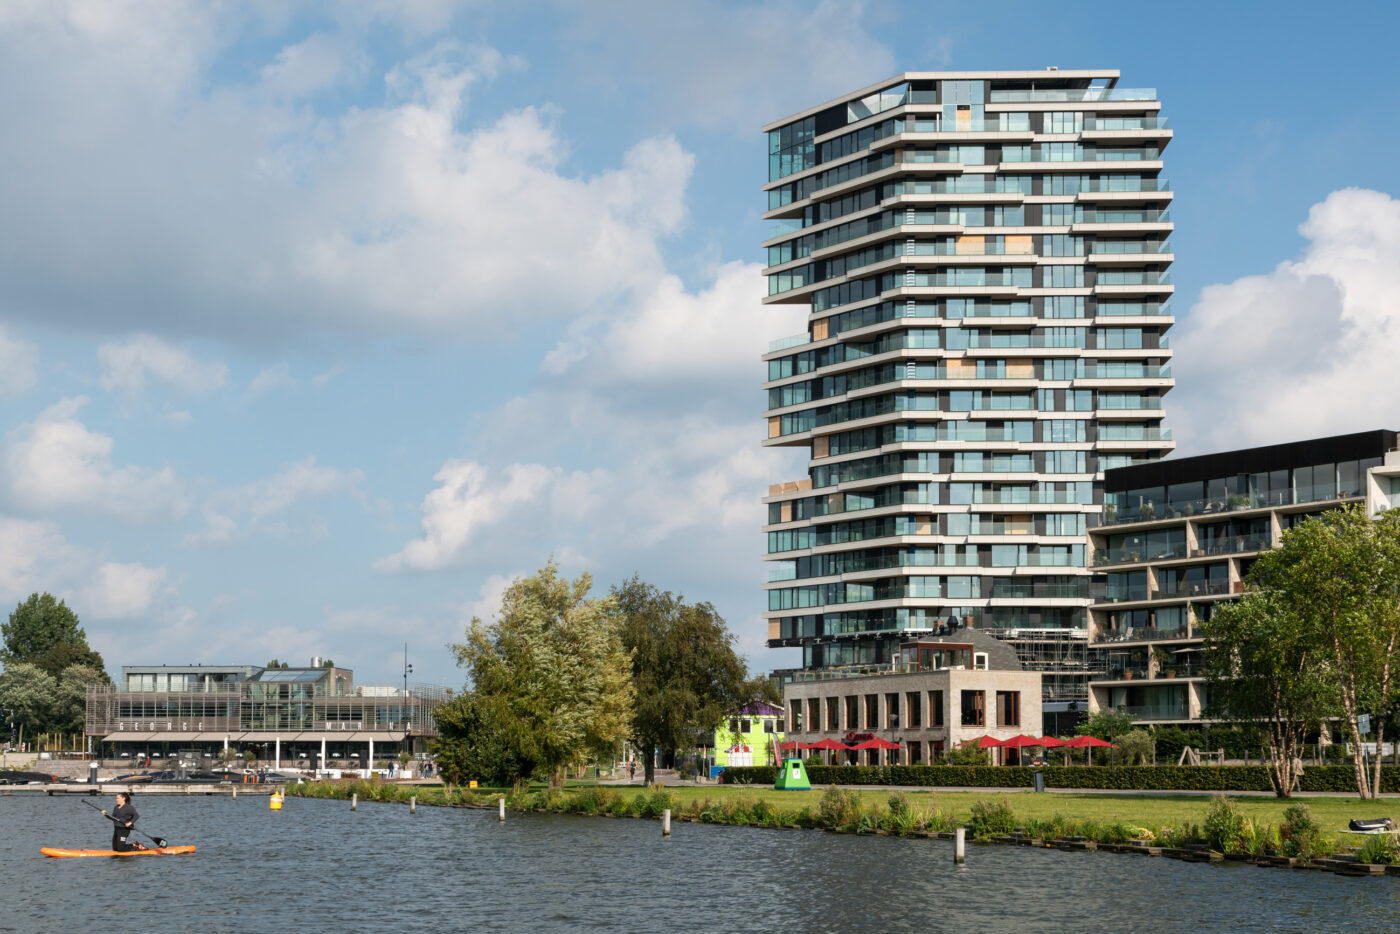 De 73 meter hoge hybride woontoren HAUT in Amsterdam is nu in de afbouwfase.